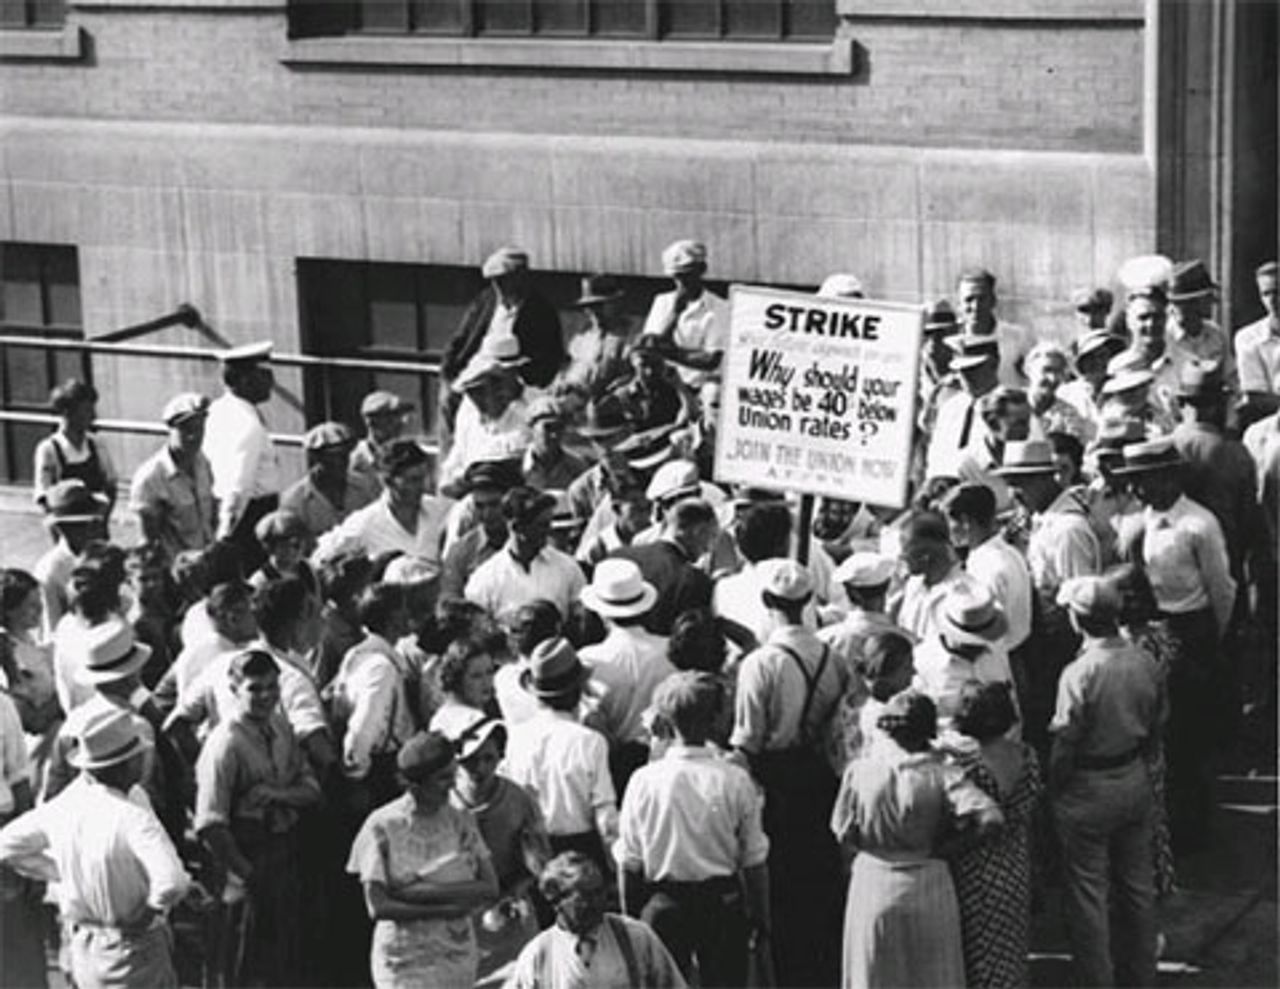 1935: Streikposten und streikende Arbeiter in Minneapolis vor der Strutwear Knitting Company.